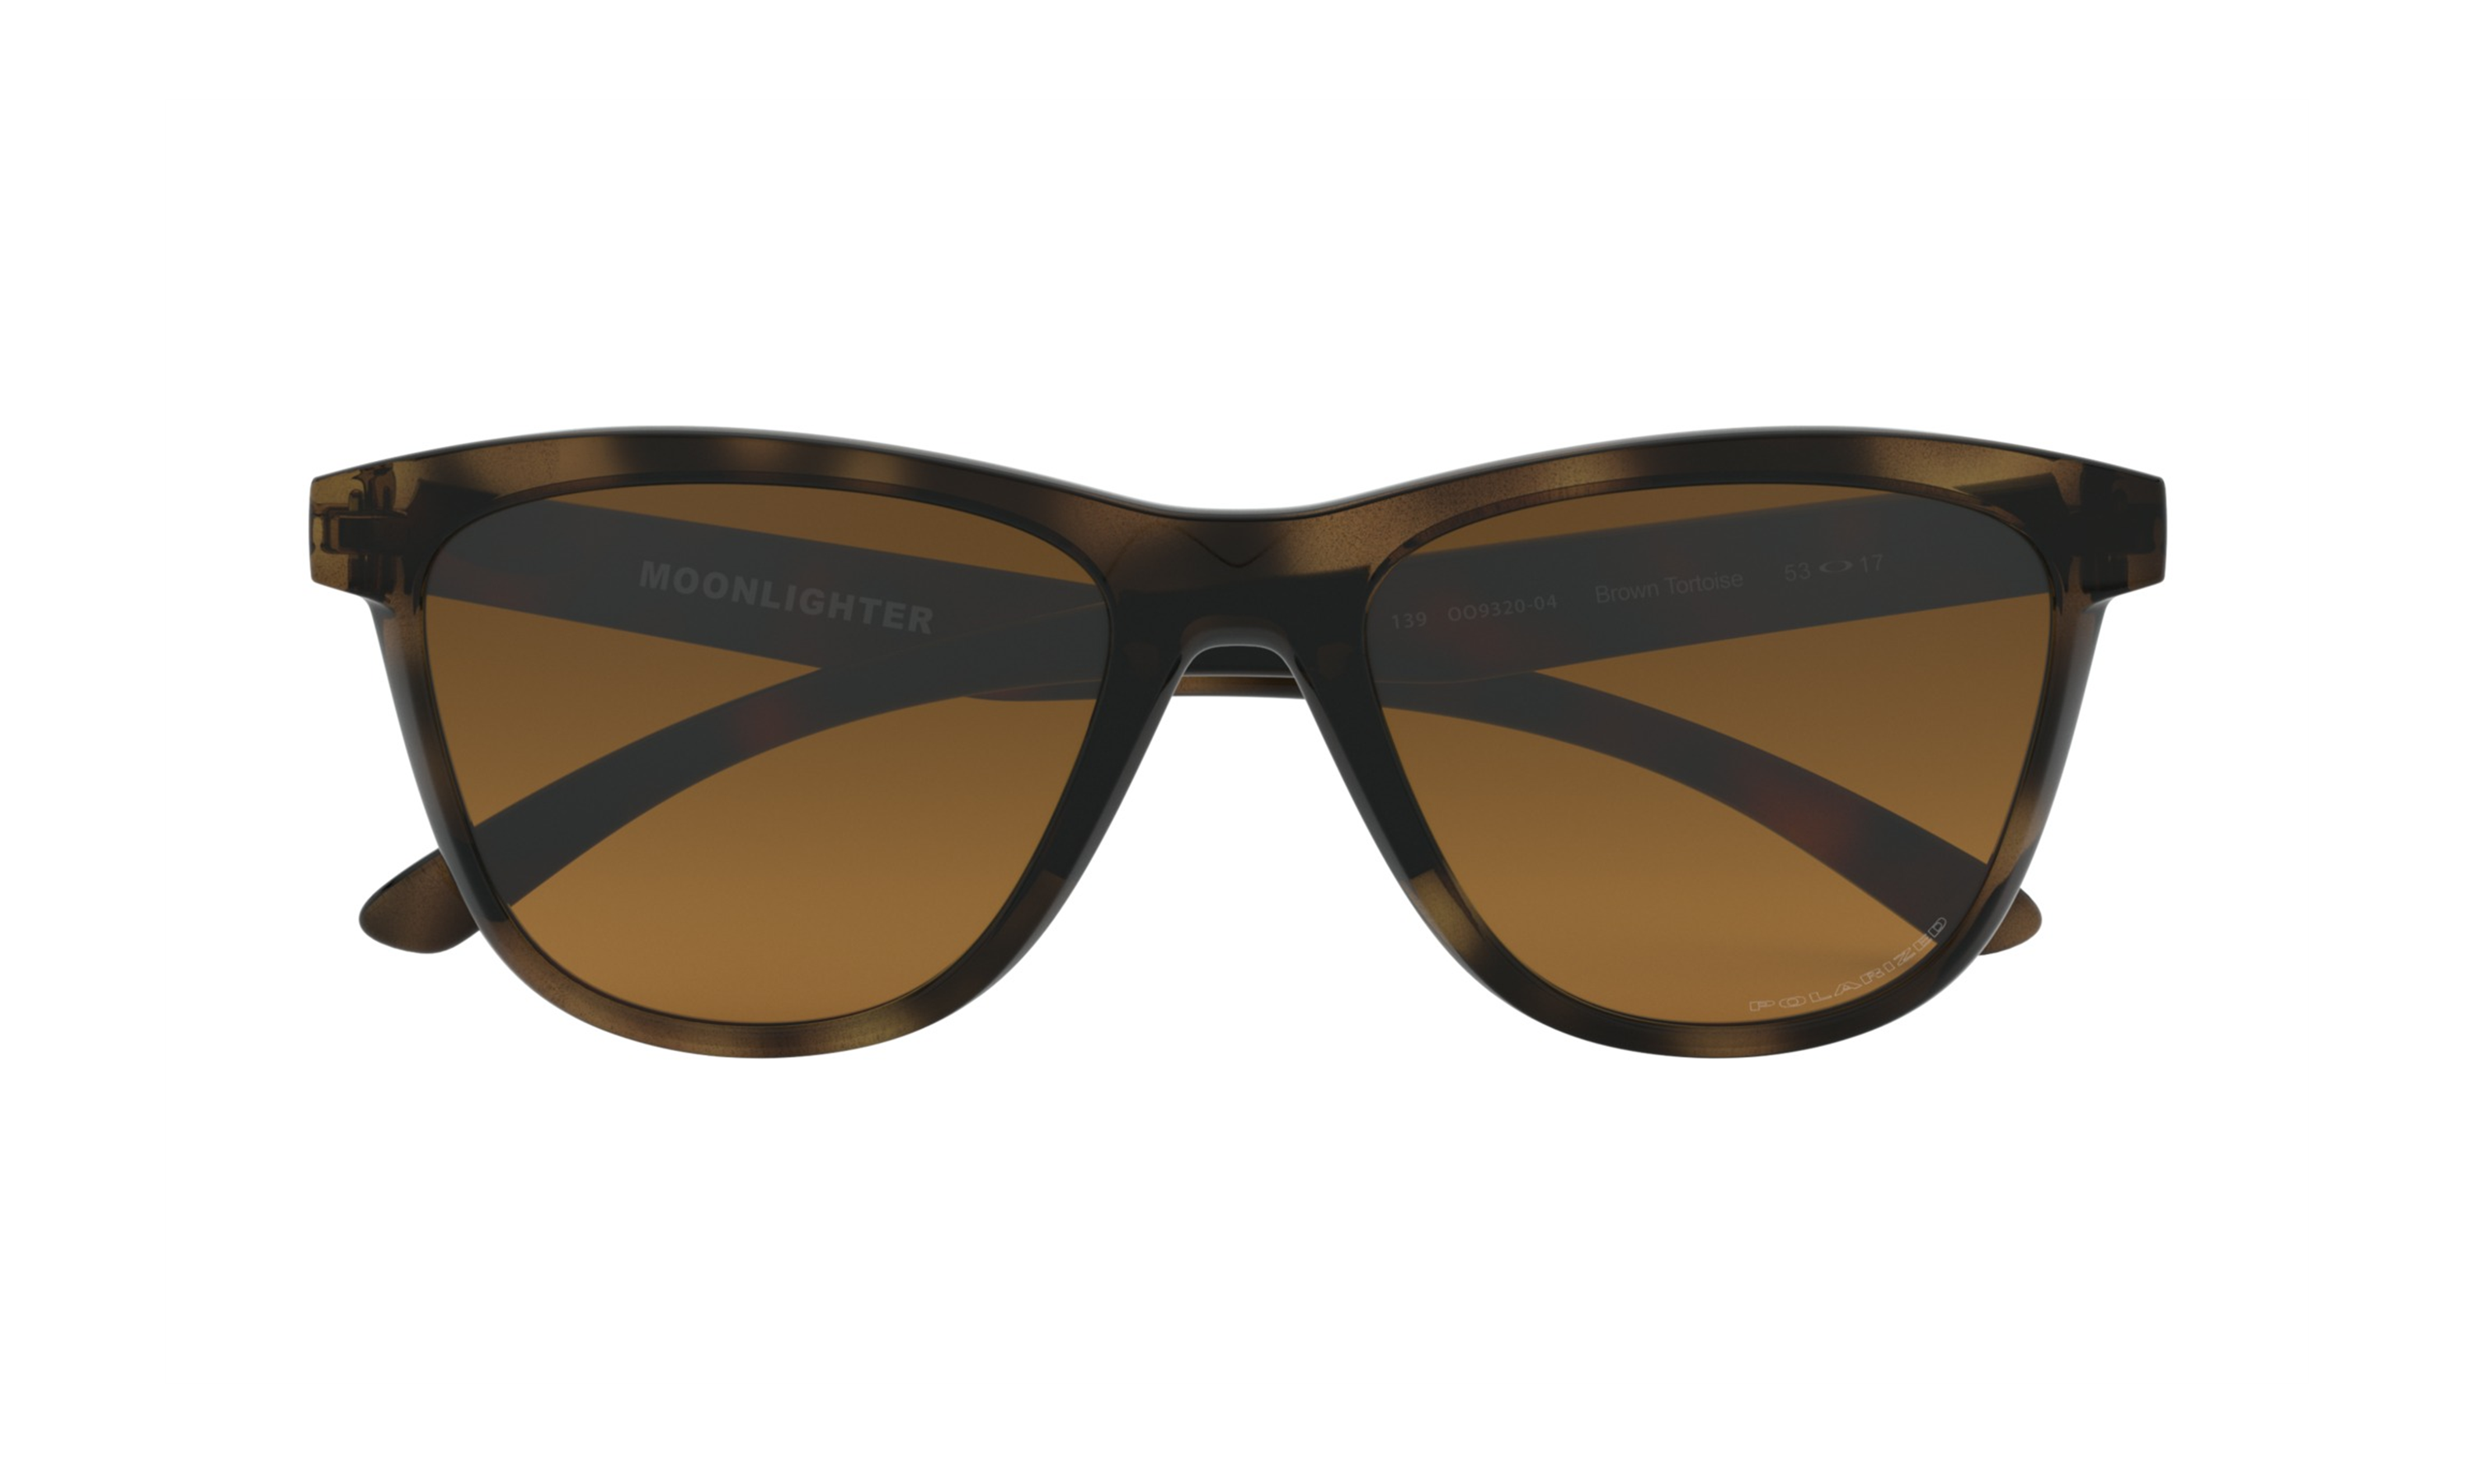 moonlighter oakley sunglasses